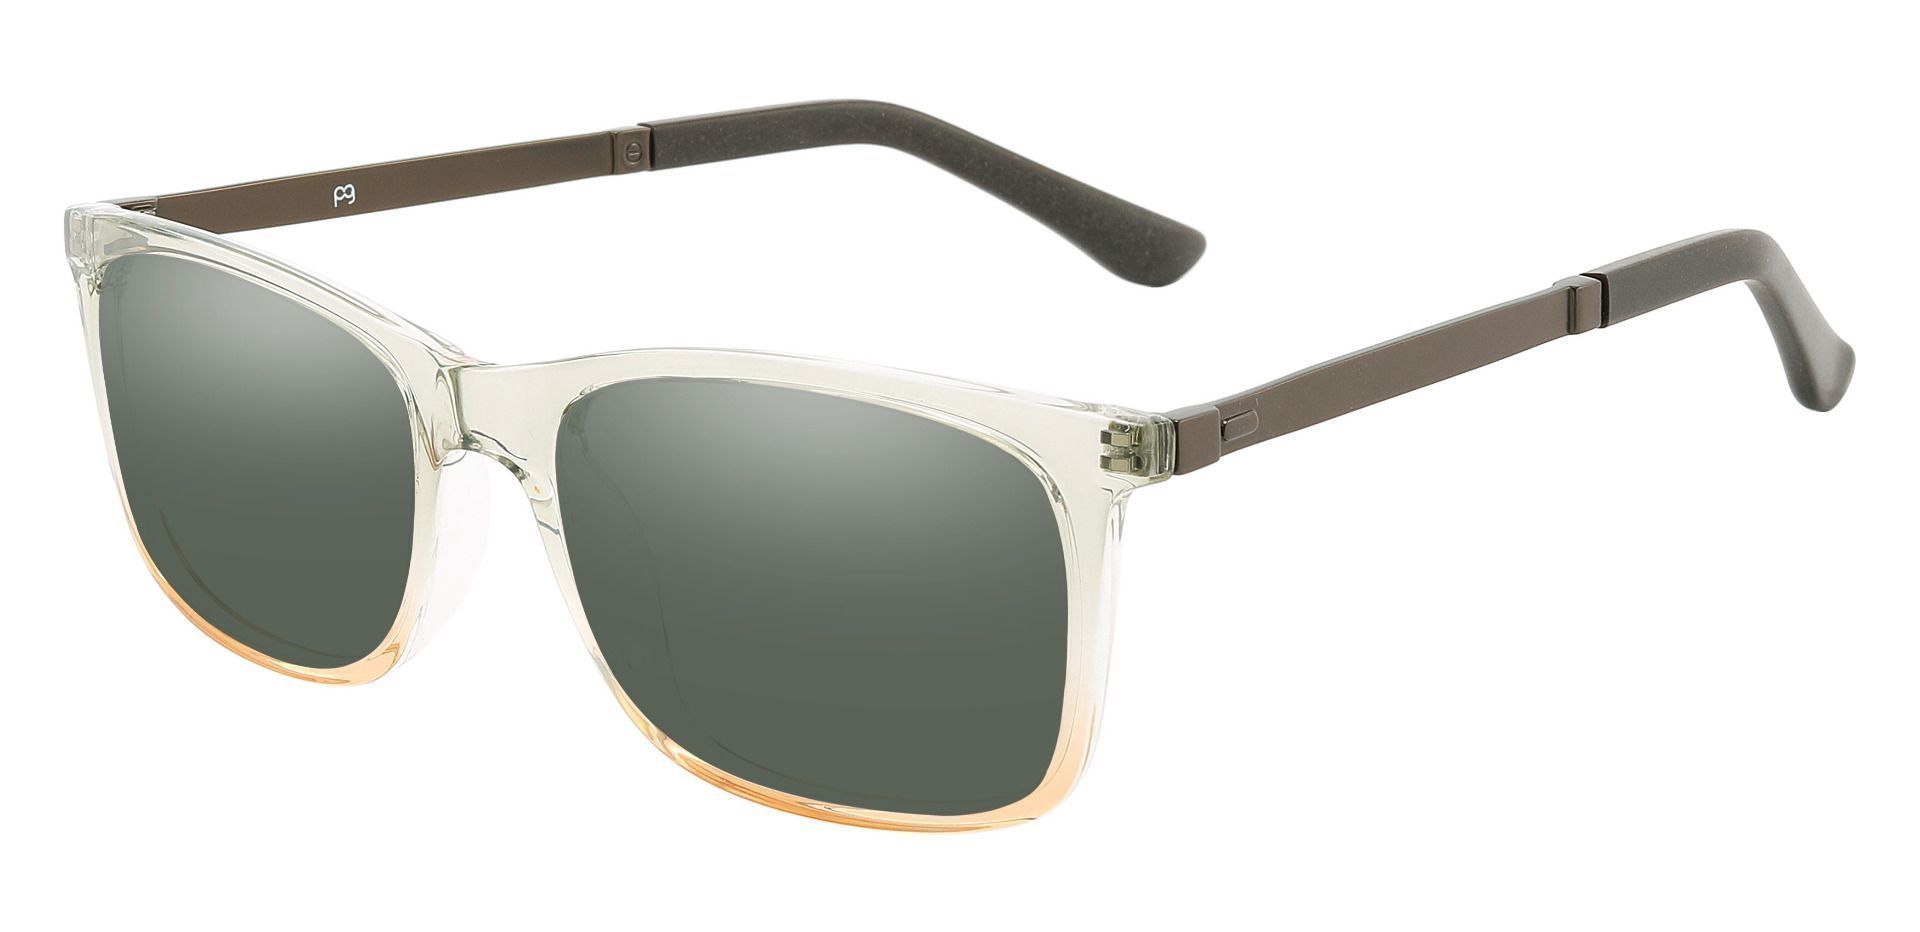 Kemper Rectangle Prescription Sunglasses - Gray Frame With Green Lenses